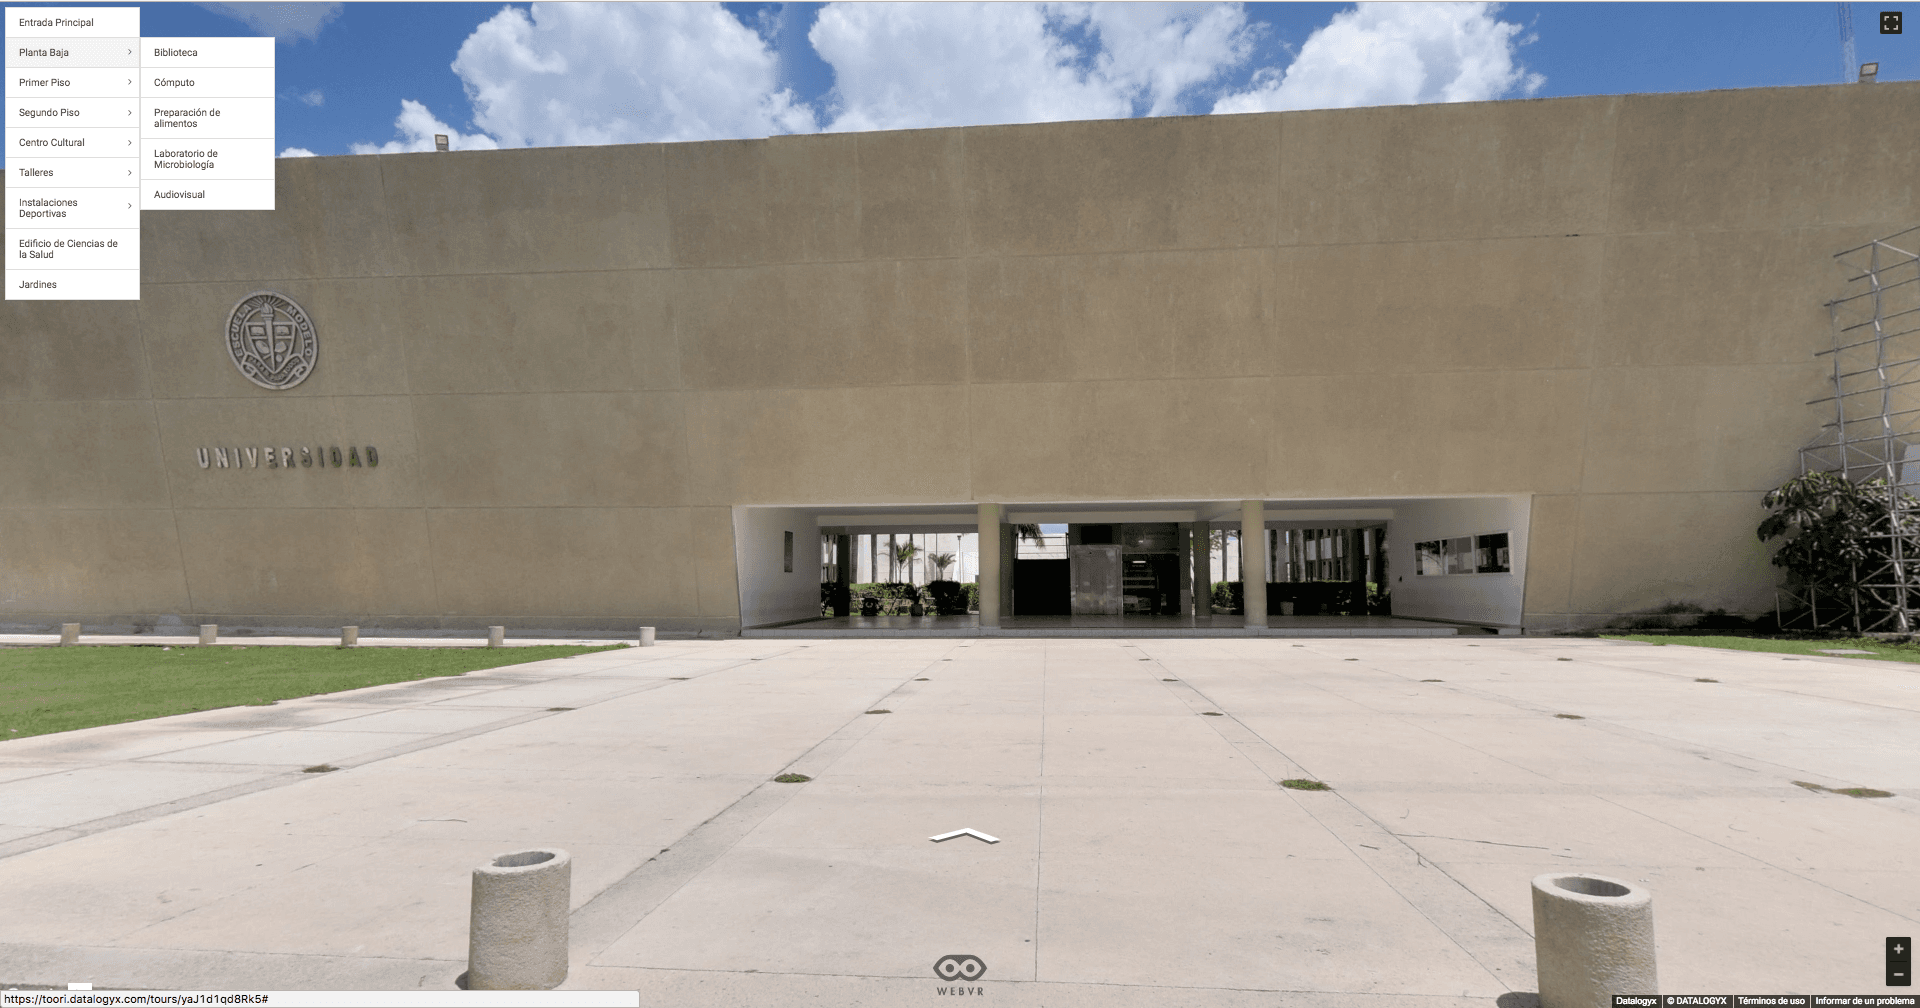 Universidad-Modelo-Mérida-cdmx-cancun-carros-auto-concesionaria-motor-coches-agencia-recorrido-virtual-google-street-view-datalogyx